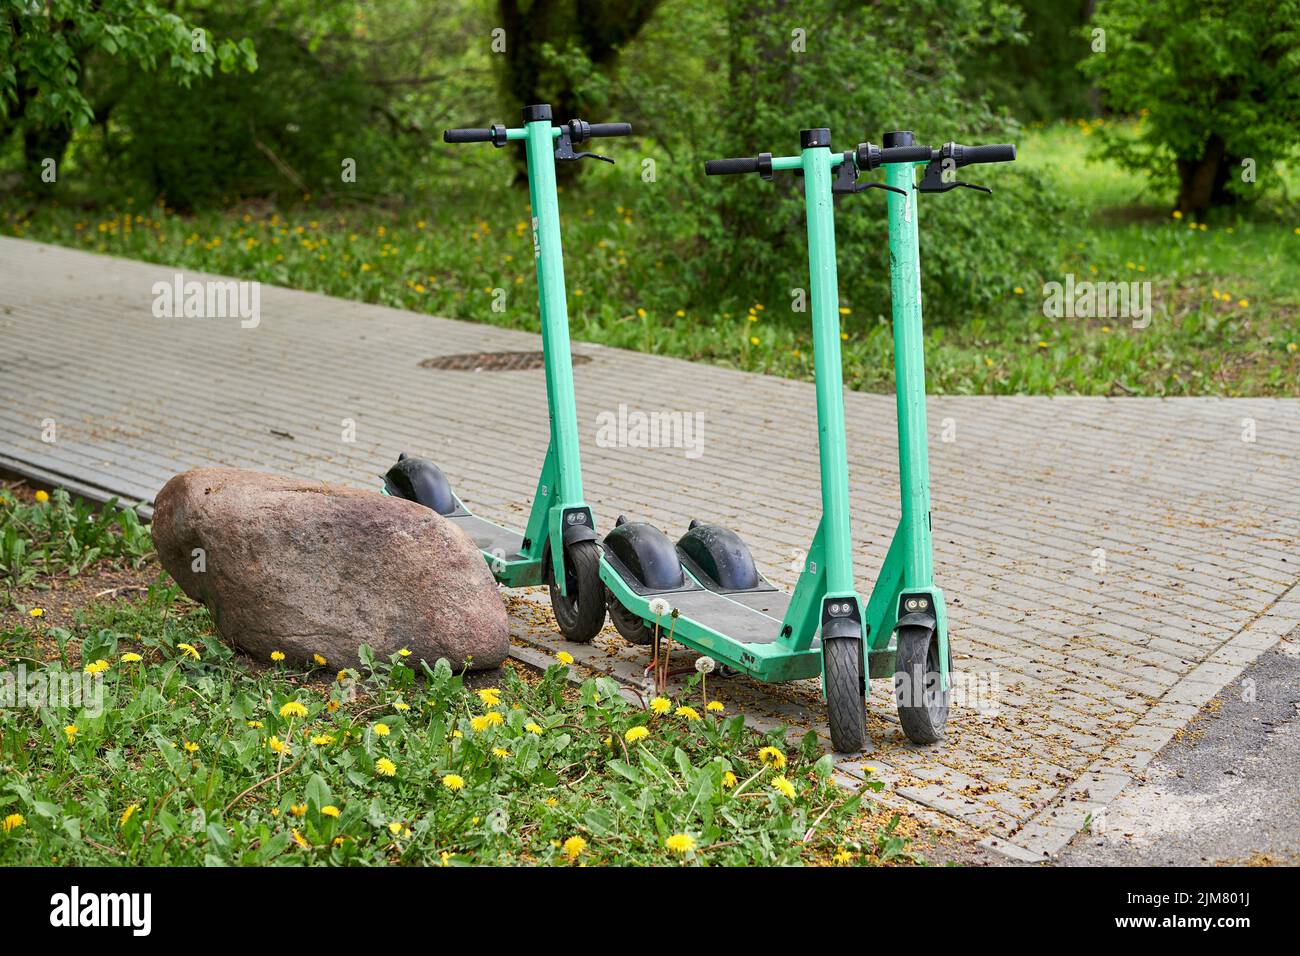 Un primo piano di tre scooter elettrici a noleggio su un sentiero nel parco Rataje Foto Stock